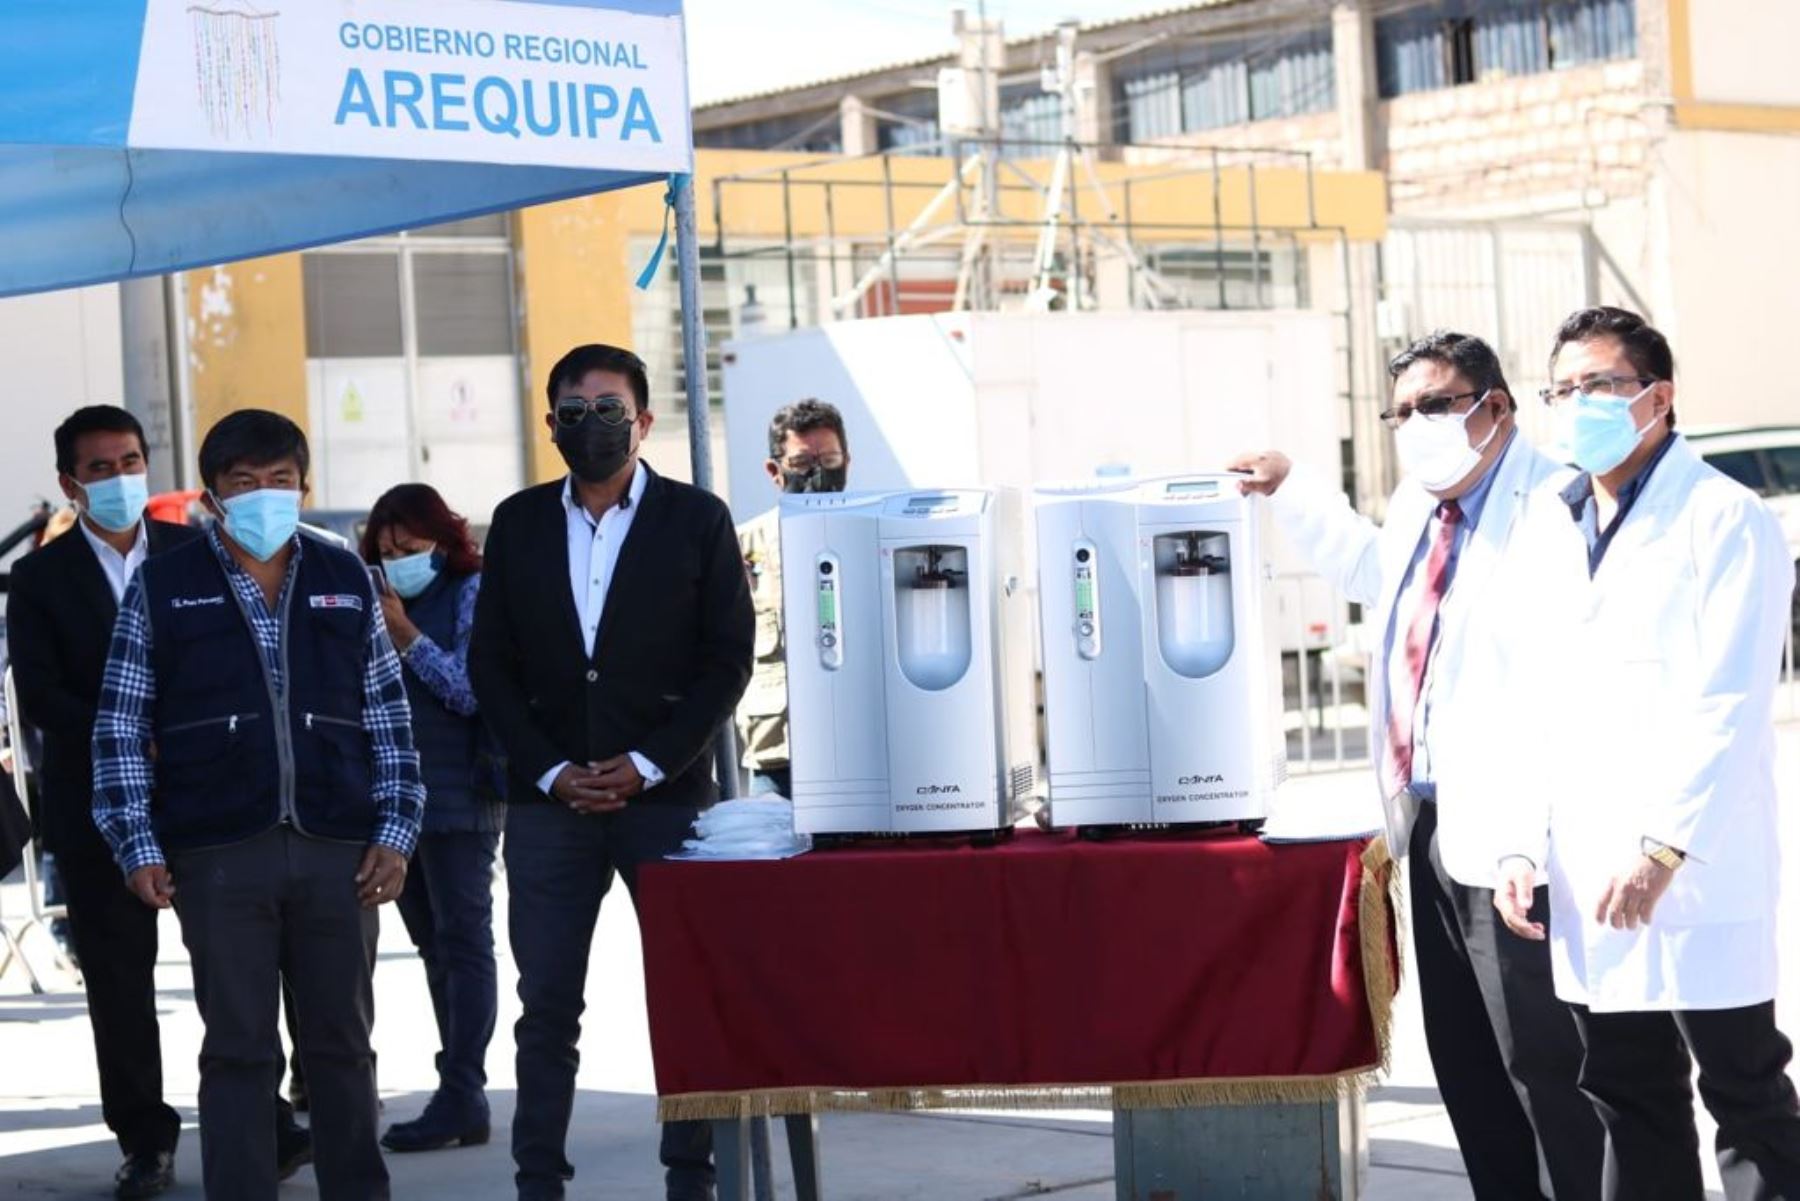 El Ministerio de Salud entregó a las autoridades de Arequipa concentradores de oxígeno para ser distribuidos a hospitales y centros de salud de esa región para enfrentar la pandemia de covid-19. ANDINA/Difusión